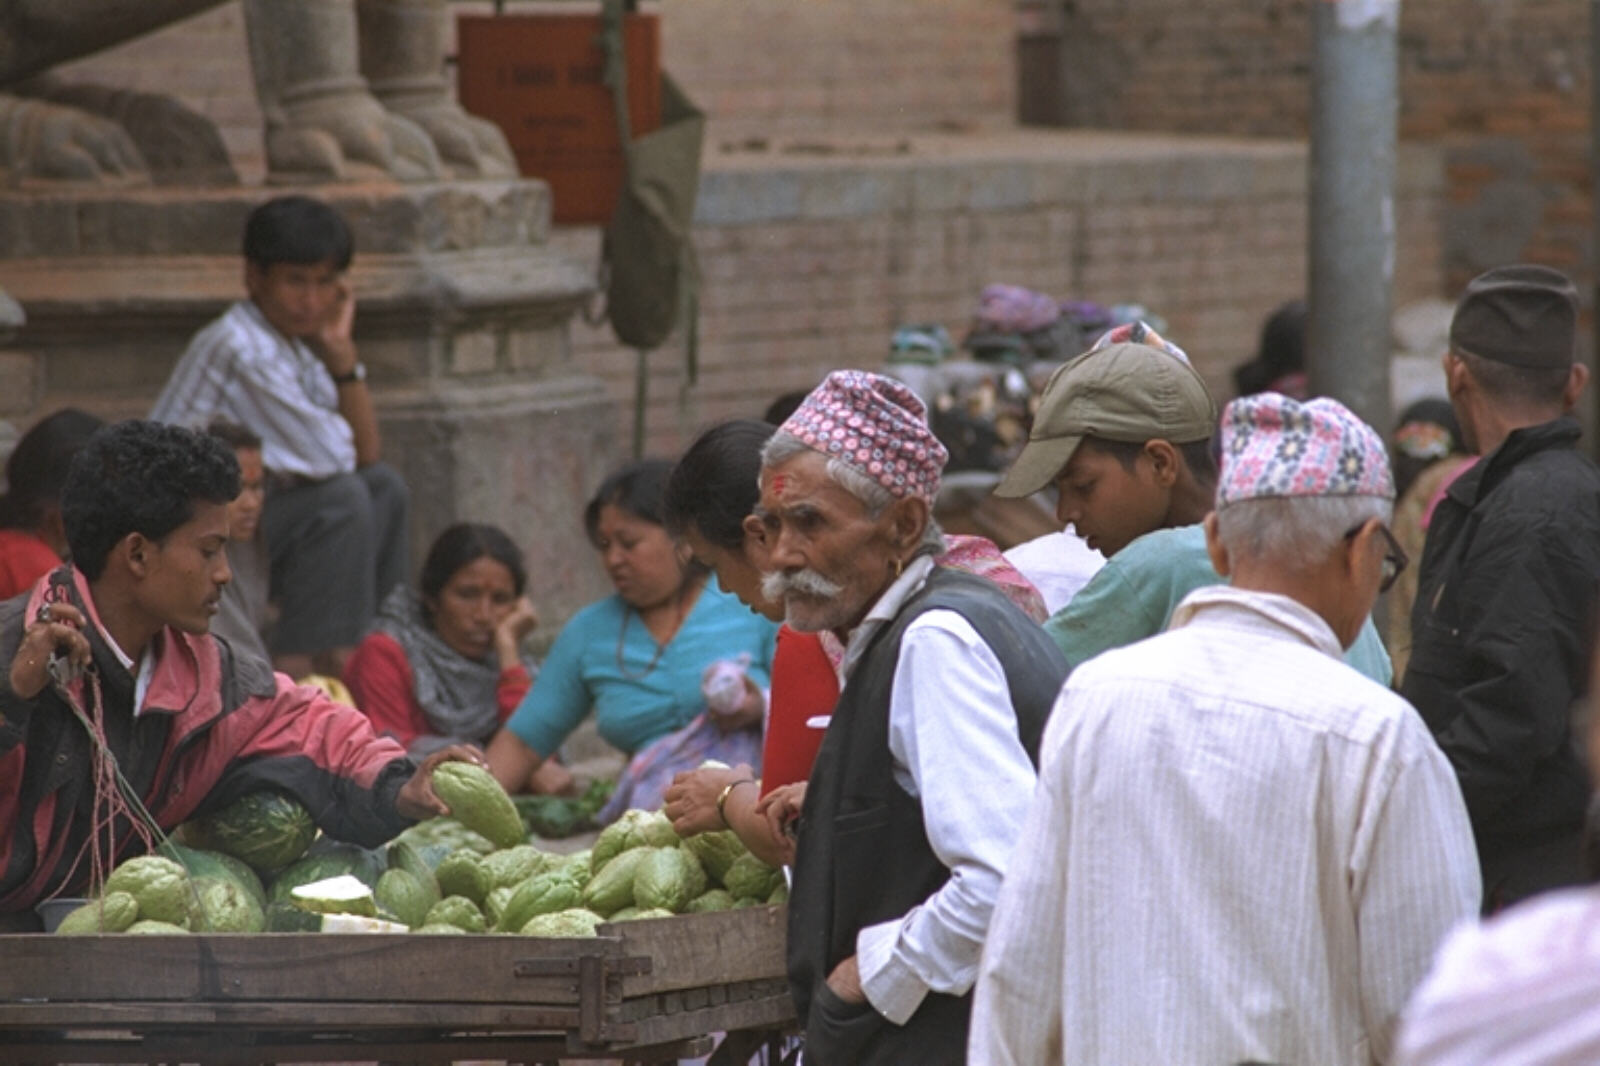 Street market in Patan, Nepal